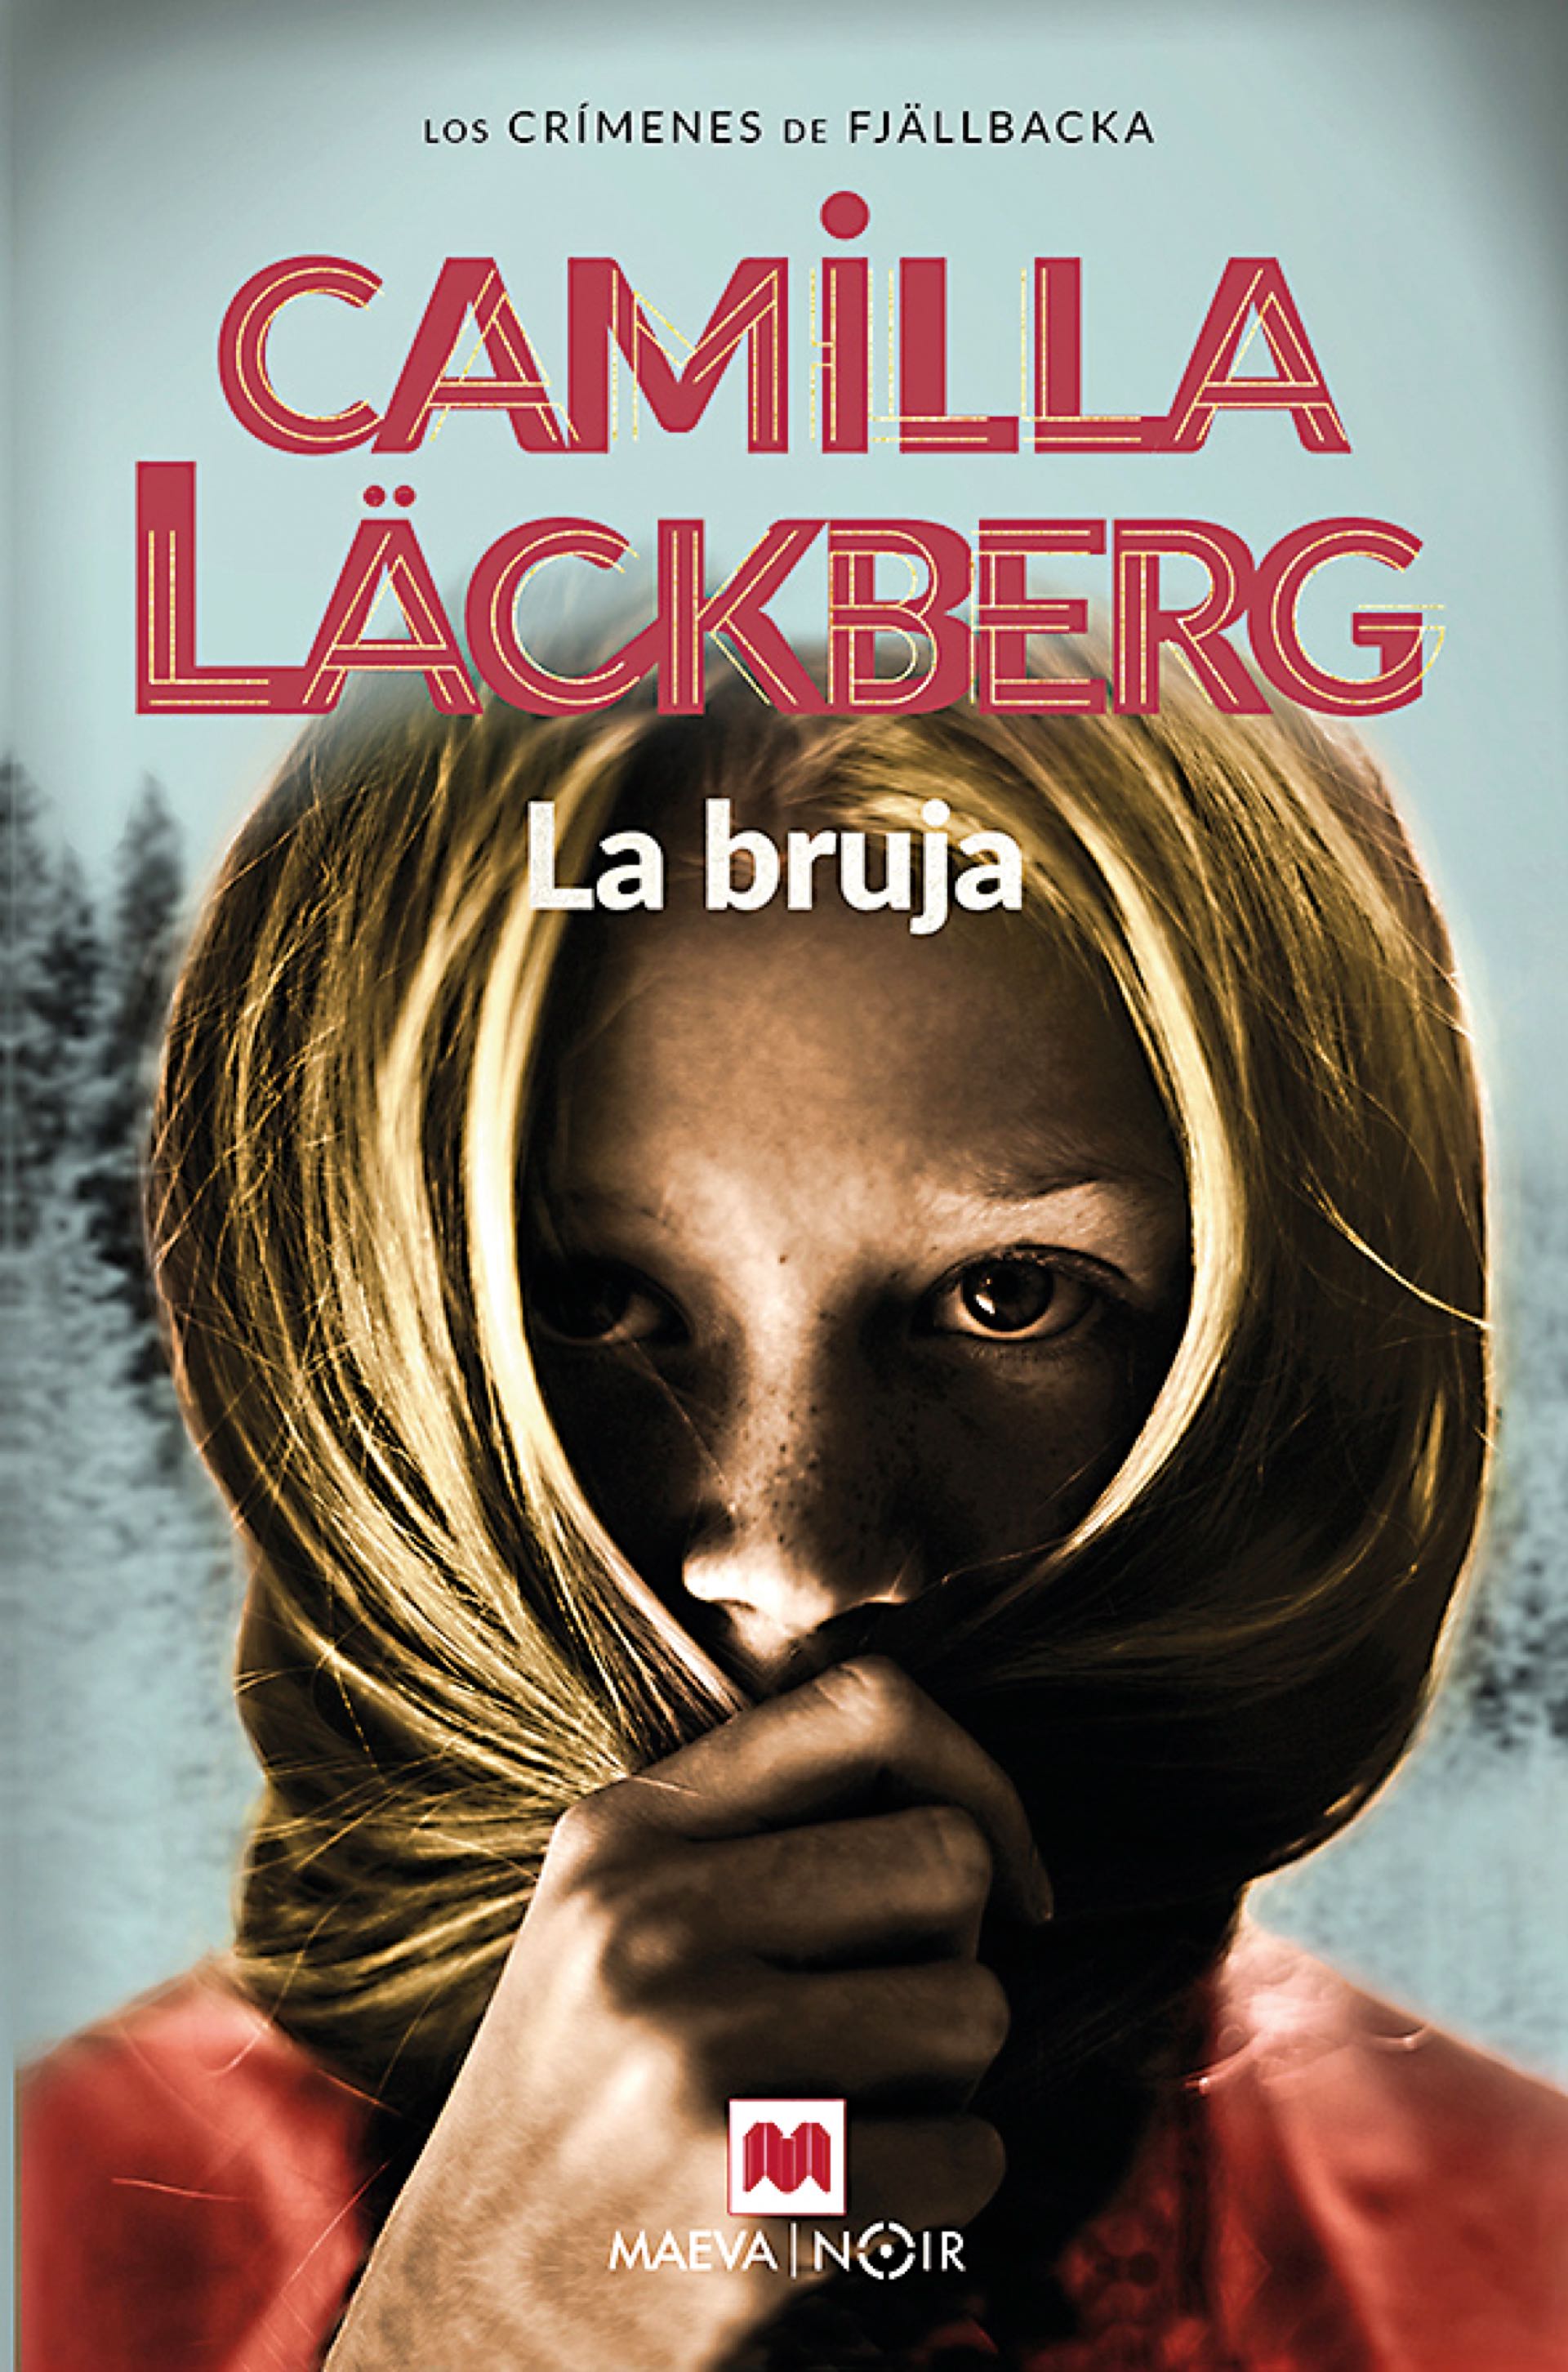 Camila es la reina sueca del crimen. Atrapante, La bruja, el último libro de la escritora y el décimo de la serie policiaca Los crímenes de Fjällbacka, la saga que la autora inició en 2003 con el lanzamiento de La Princesa de hielo.